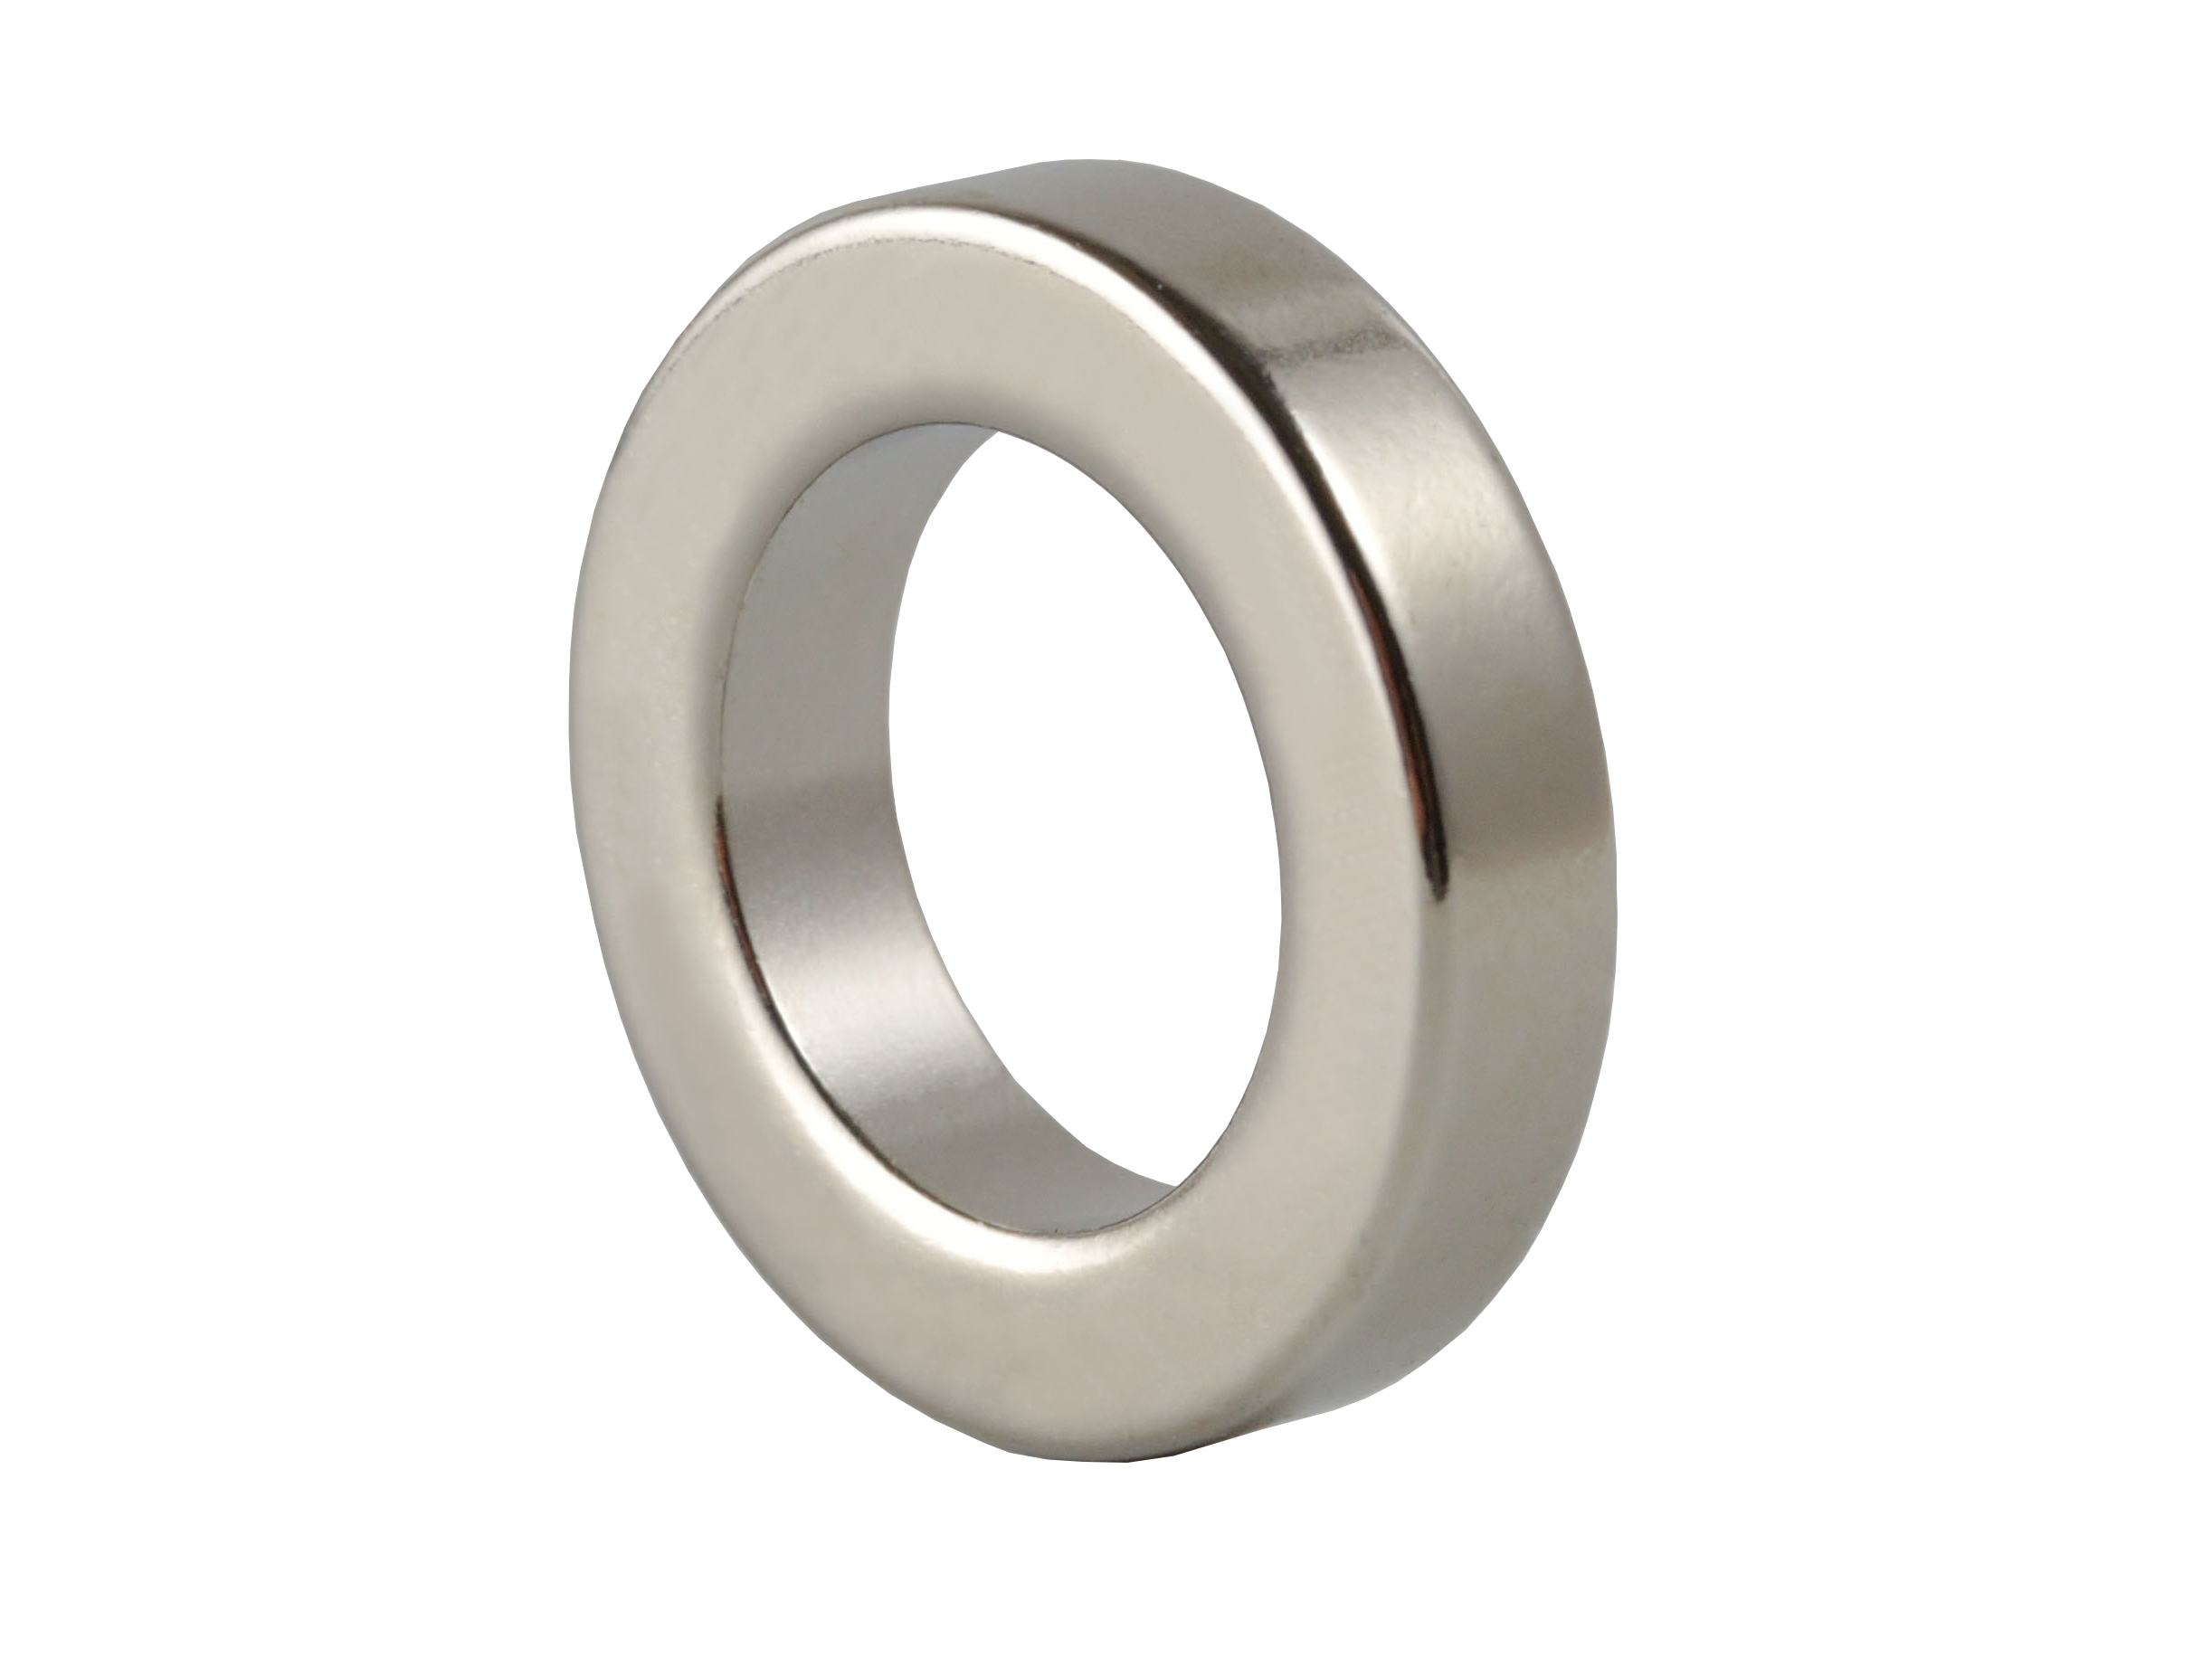 Ring‑Shaped Neodymium Magnet (NOR044) 